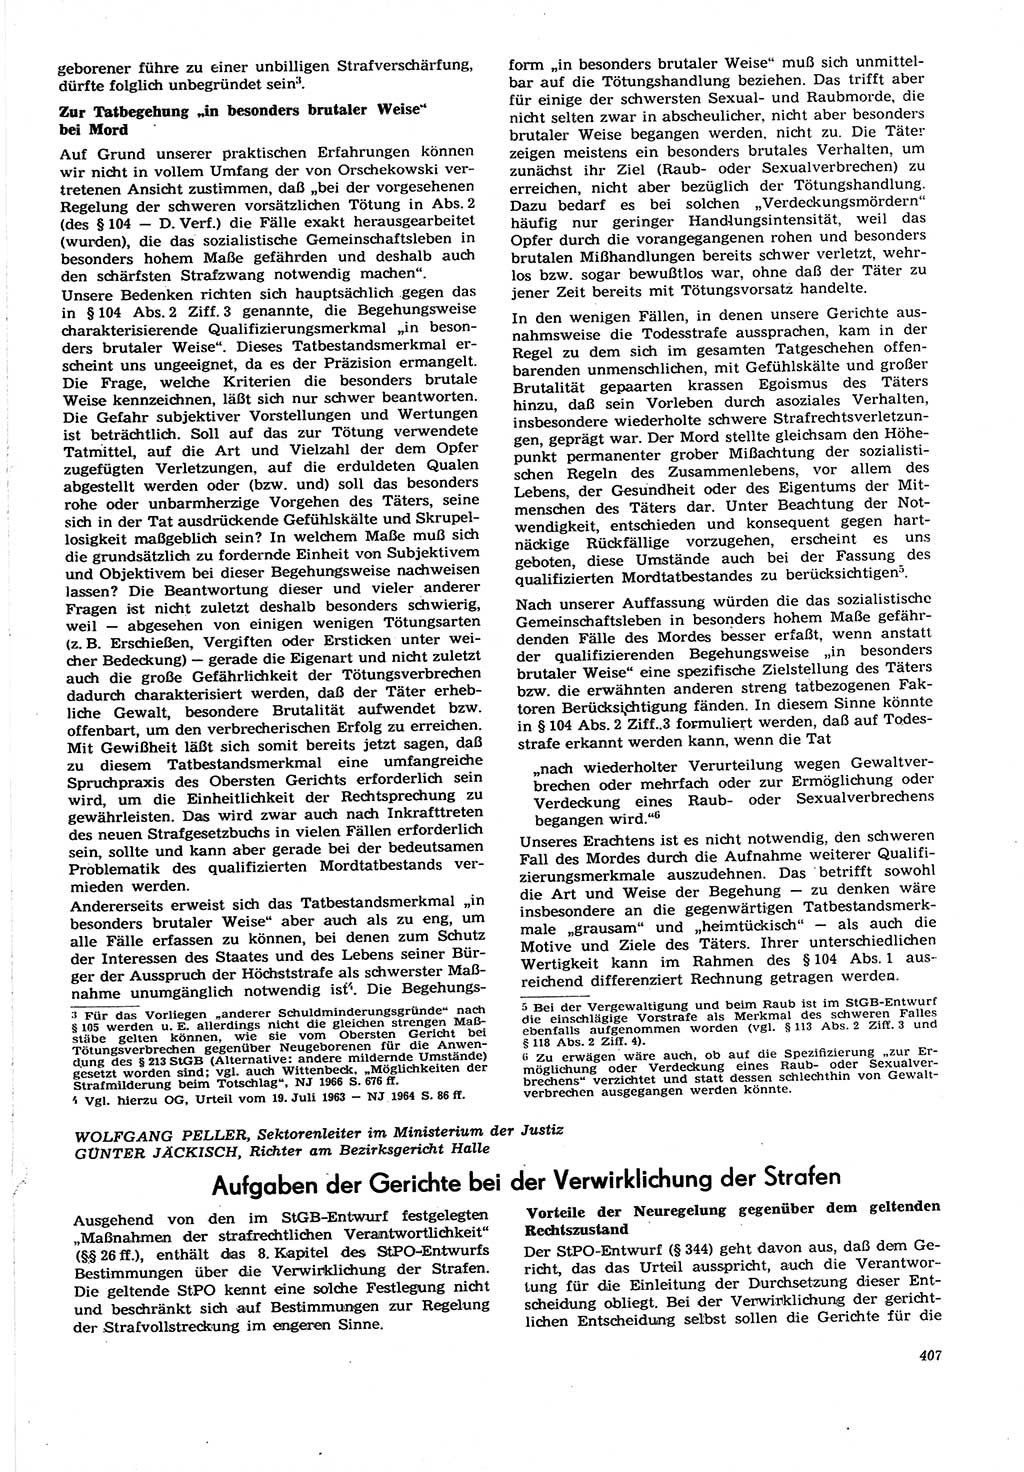 Neue Justiz (NJ), Zeitschrift für Recht und Rechtswissenschaft [Deutsche Demokratische Republik (DDR)], 21. Jahrgang 1967, Seite 407 (NJ DDR 1967, S. 407)